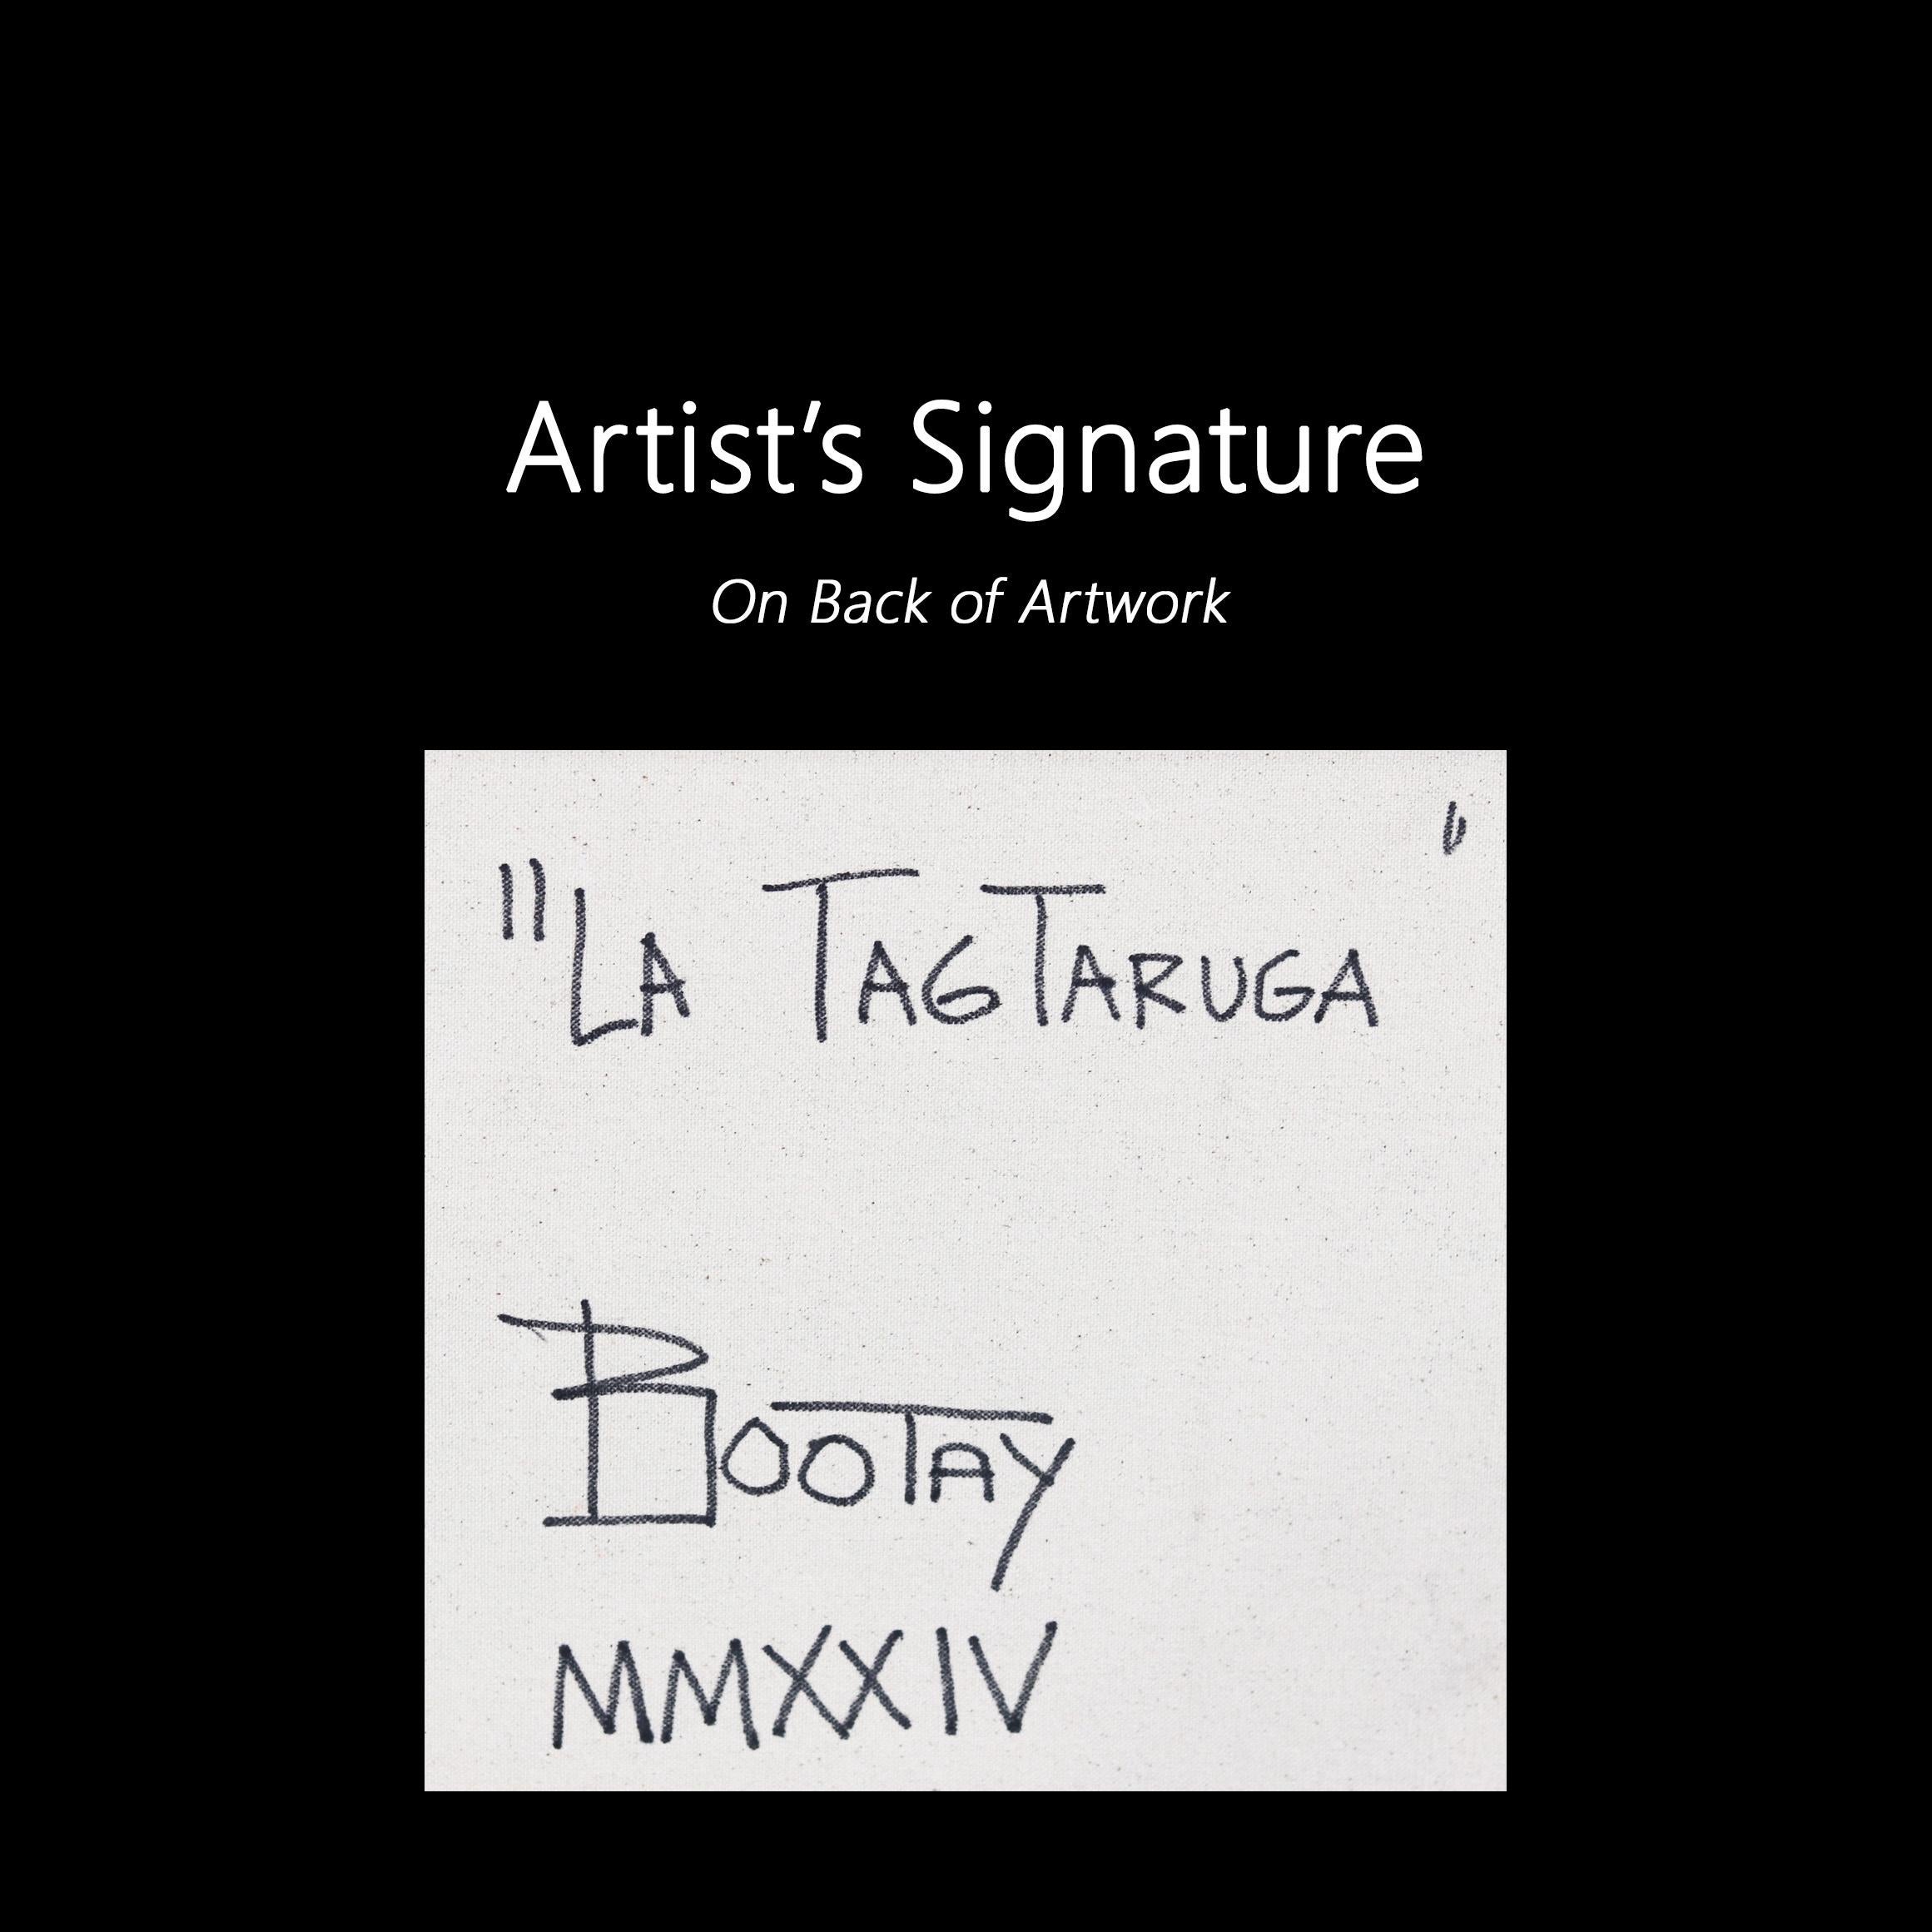 La Tagtaruga - Cubism Large Original Artwork on Canvas  For Sale 6